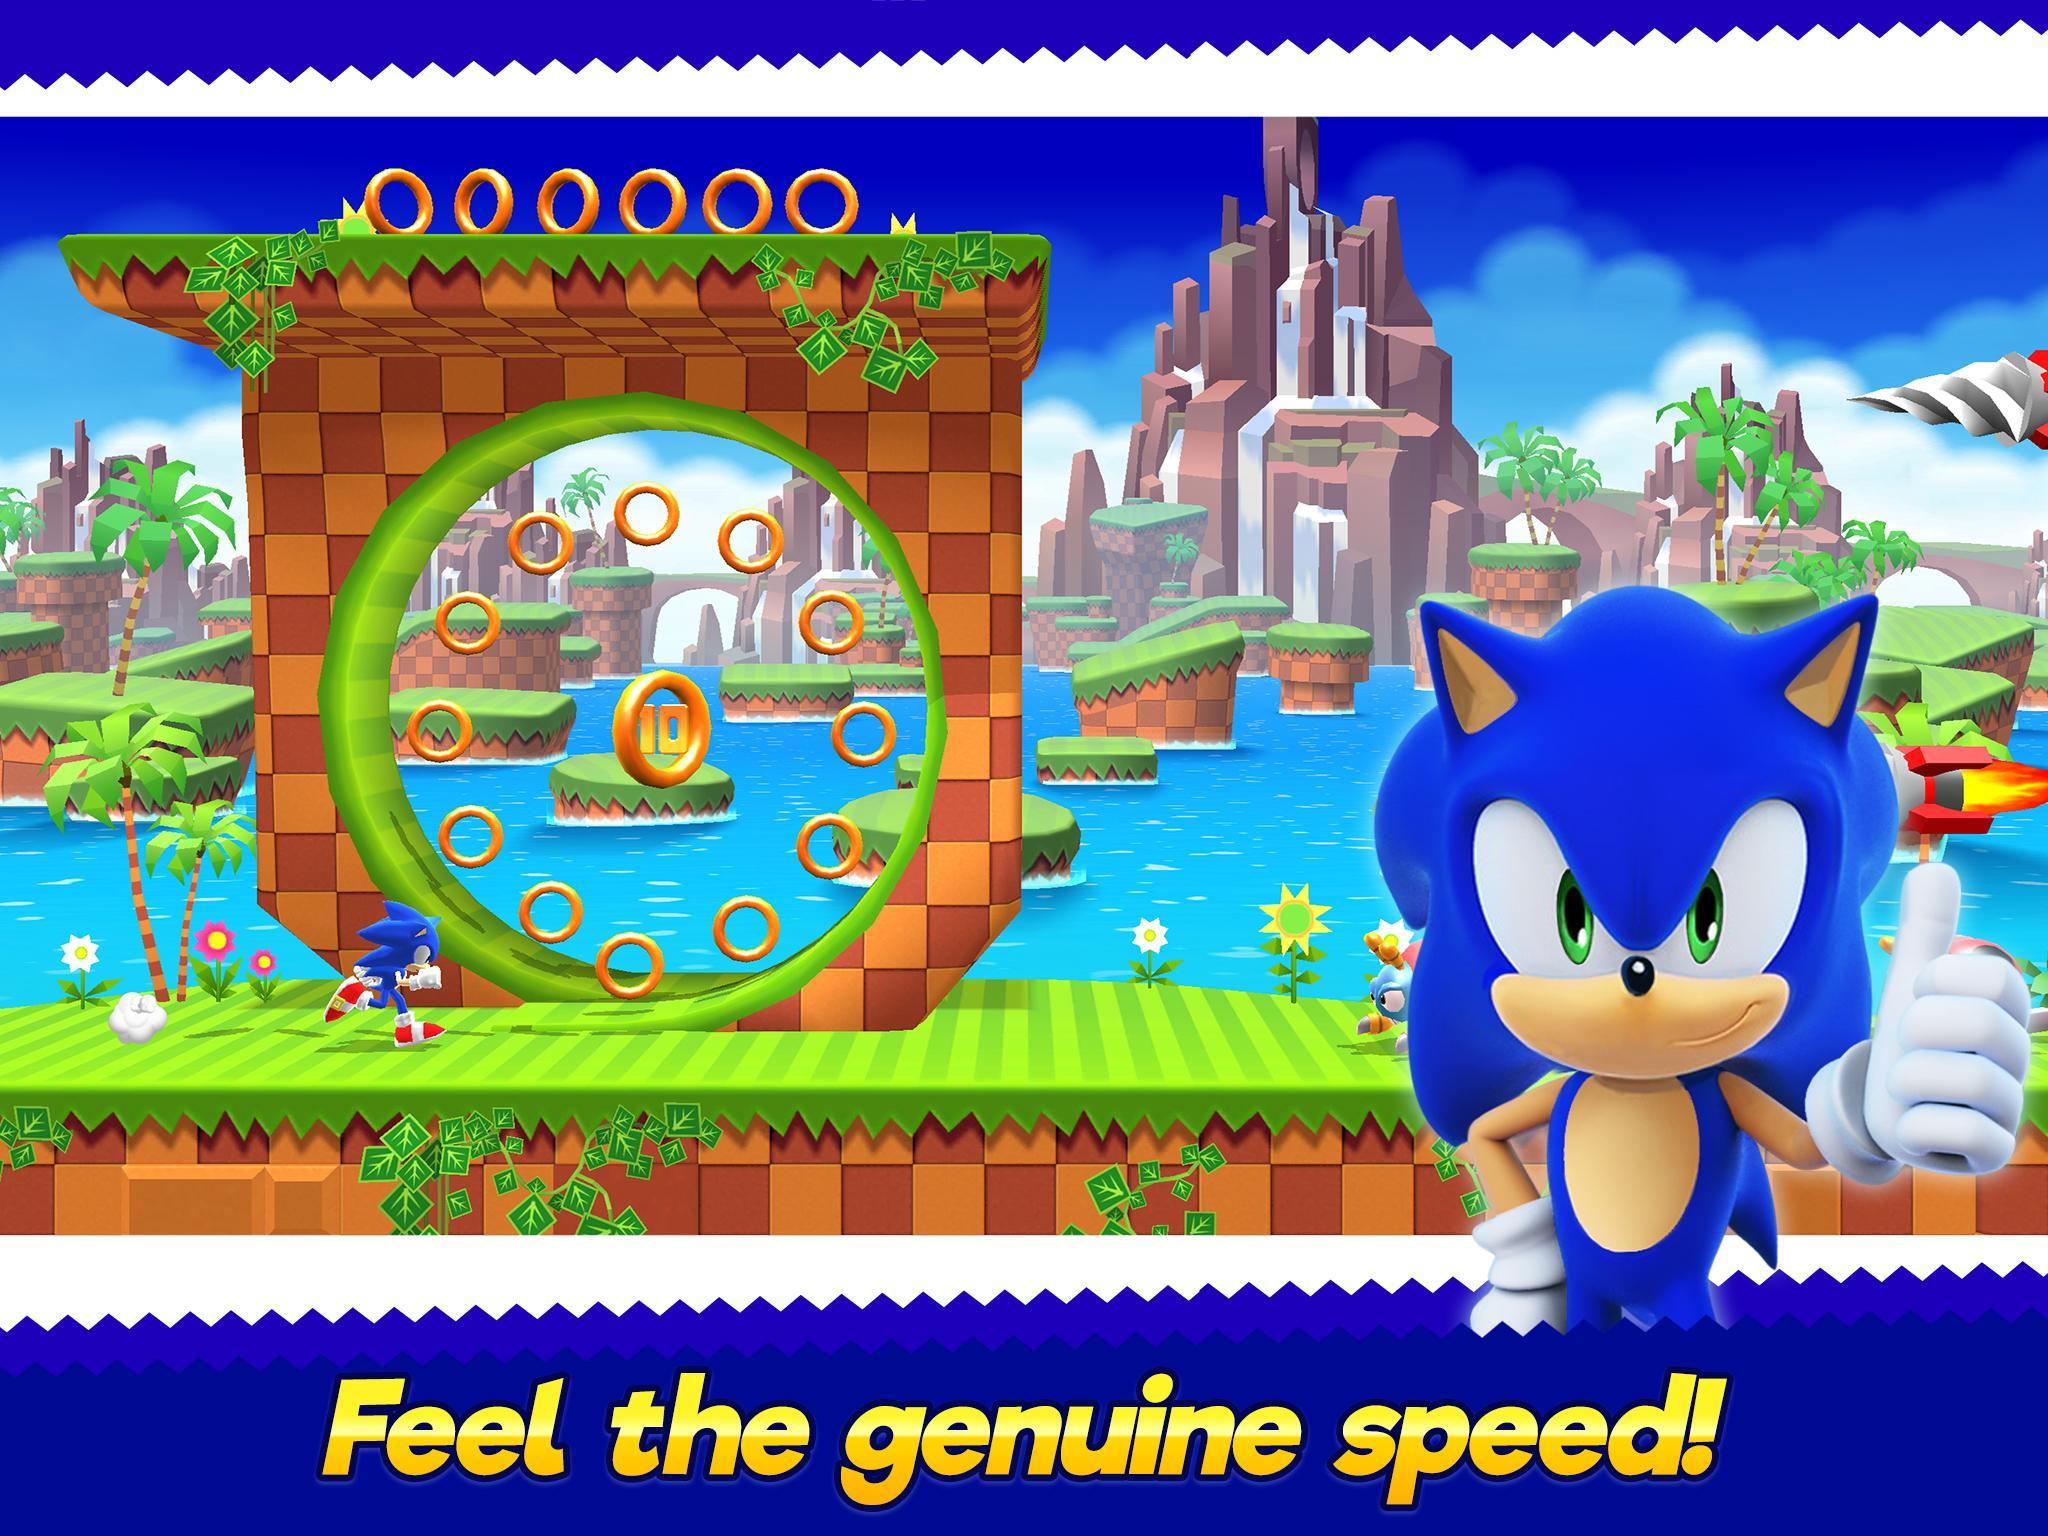 Sonic бег и гонки игра. Соник раннер. Соник Раннерс адвенчер. Sonic Runners Adventures игра. Sonic Runners Adventures - новый раннер с Соником.